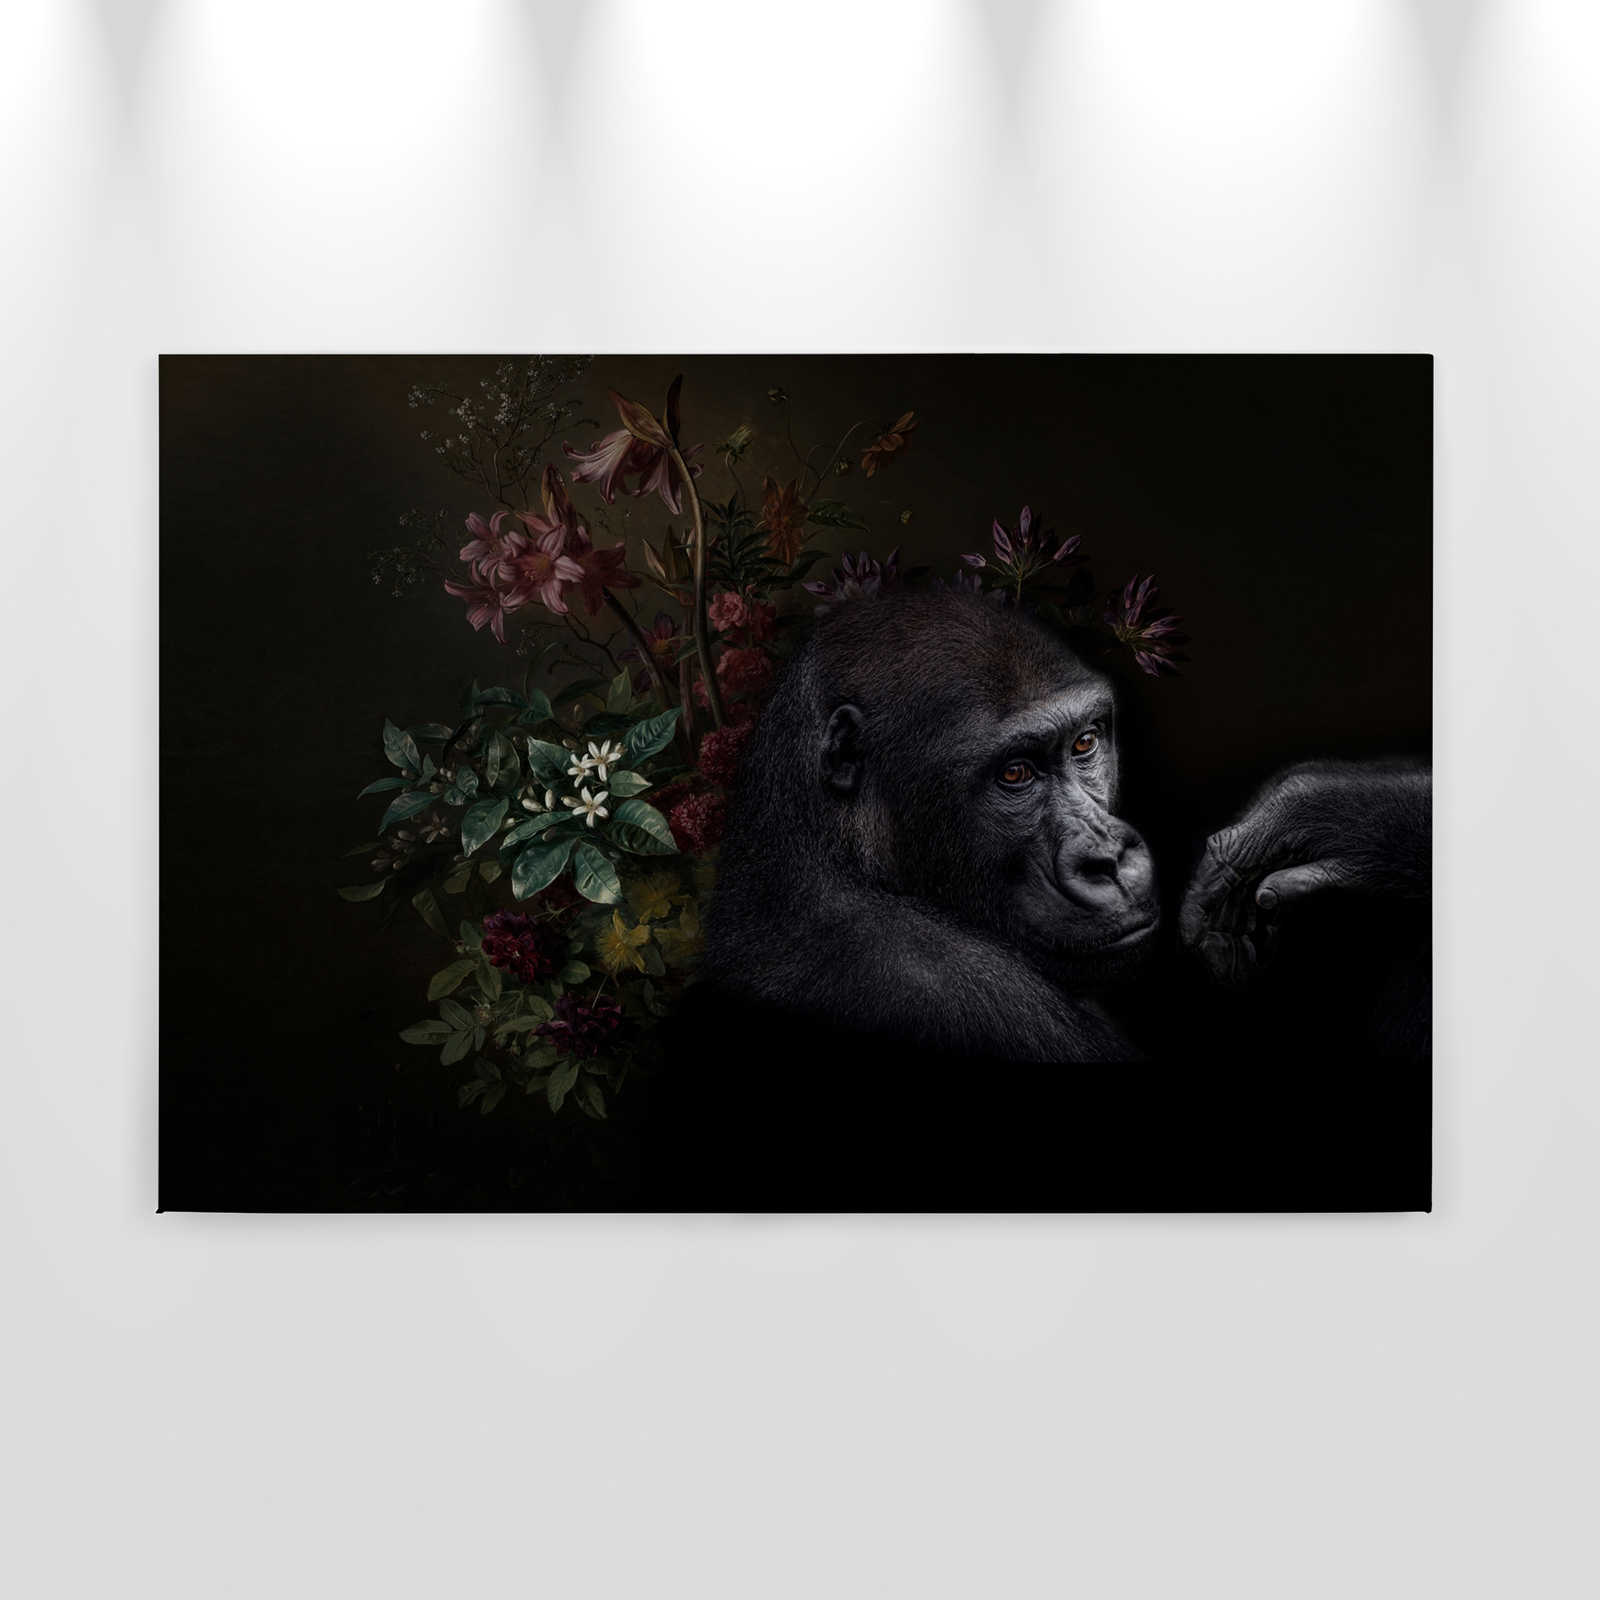             Quadro su tela Ritratto di gorilla con fiori - 0,90 m x 0,60 m
        